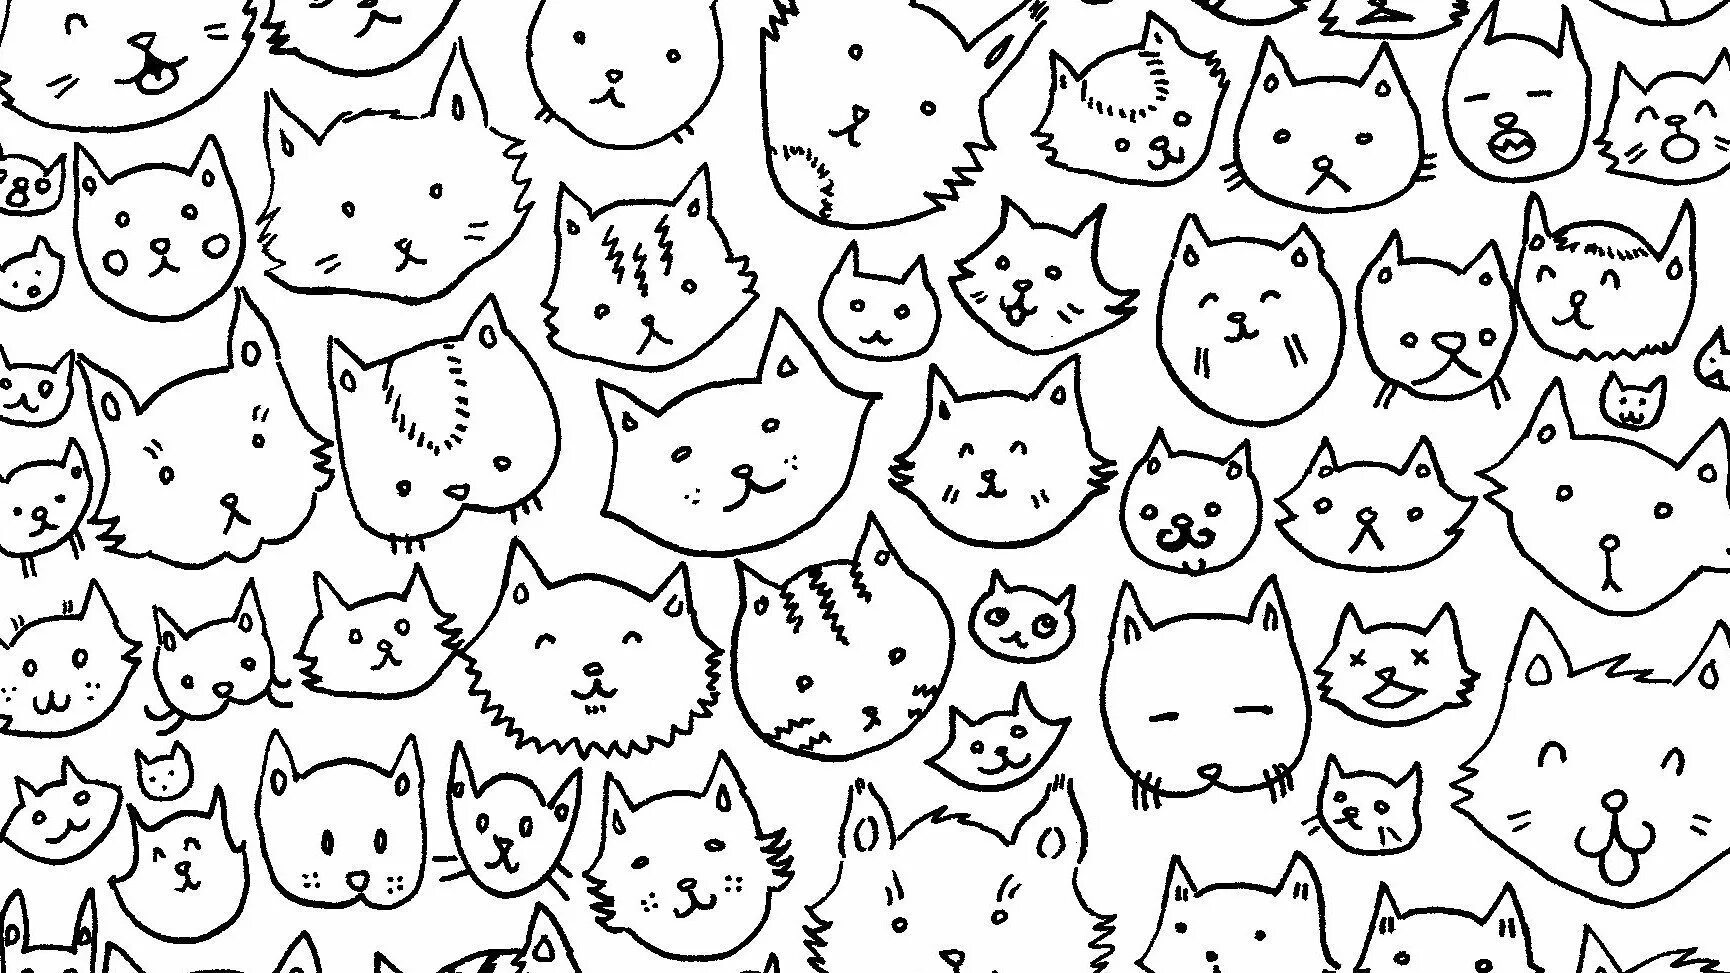 Many cats #4